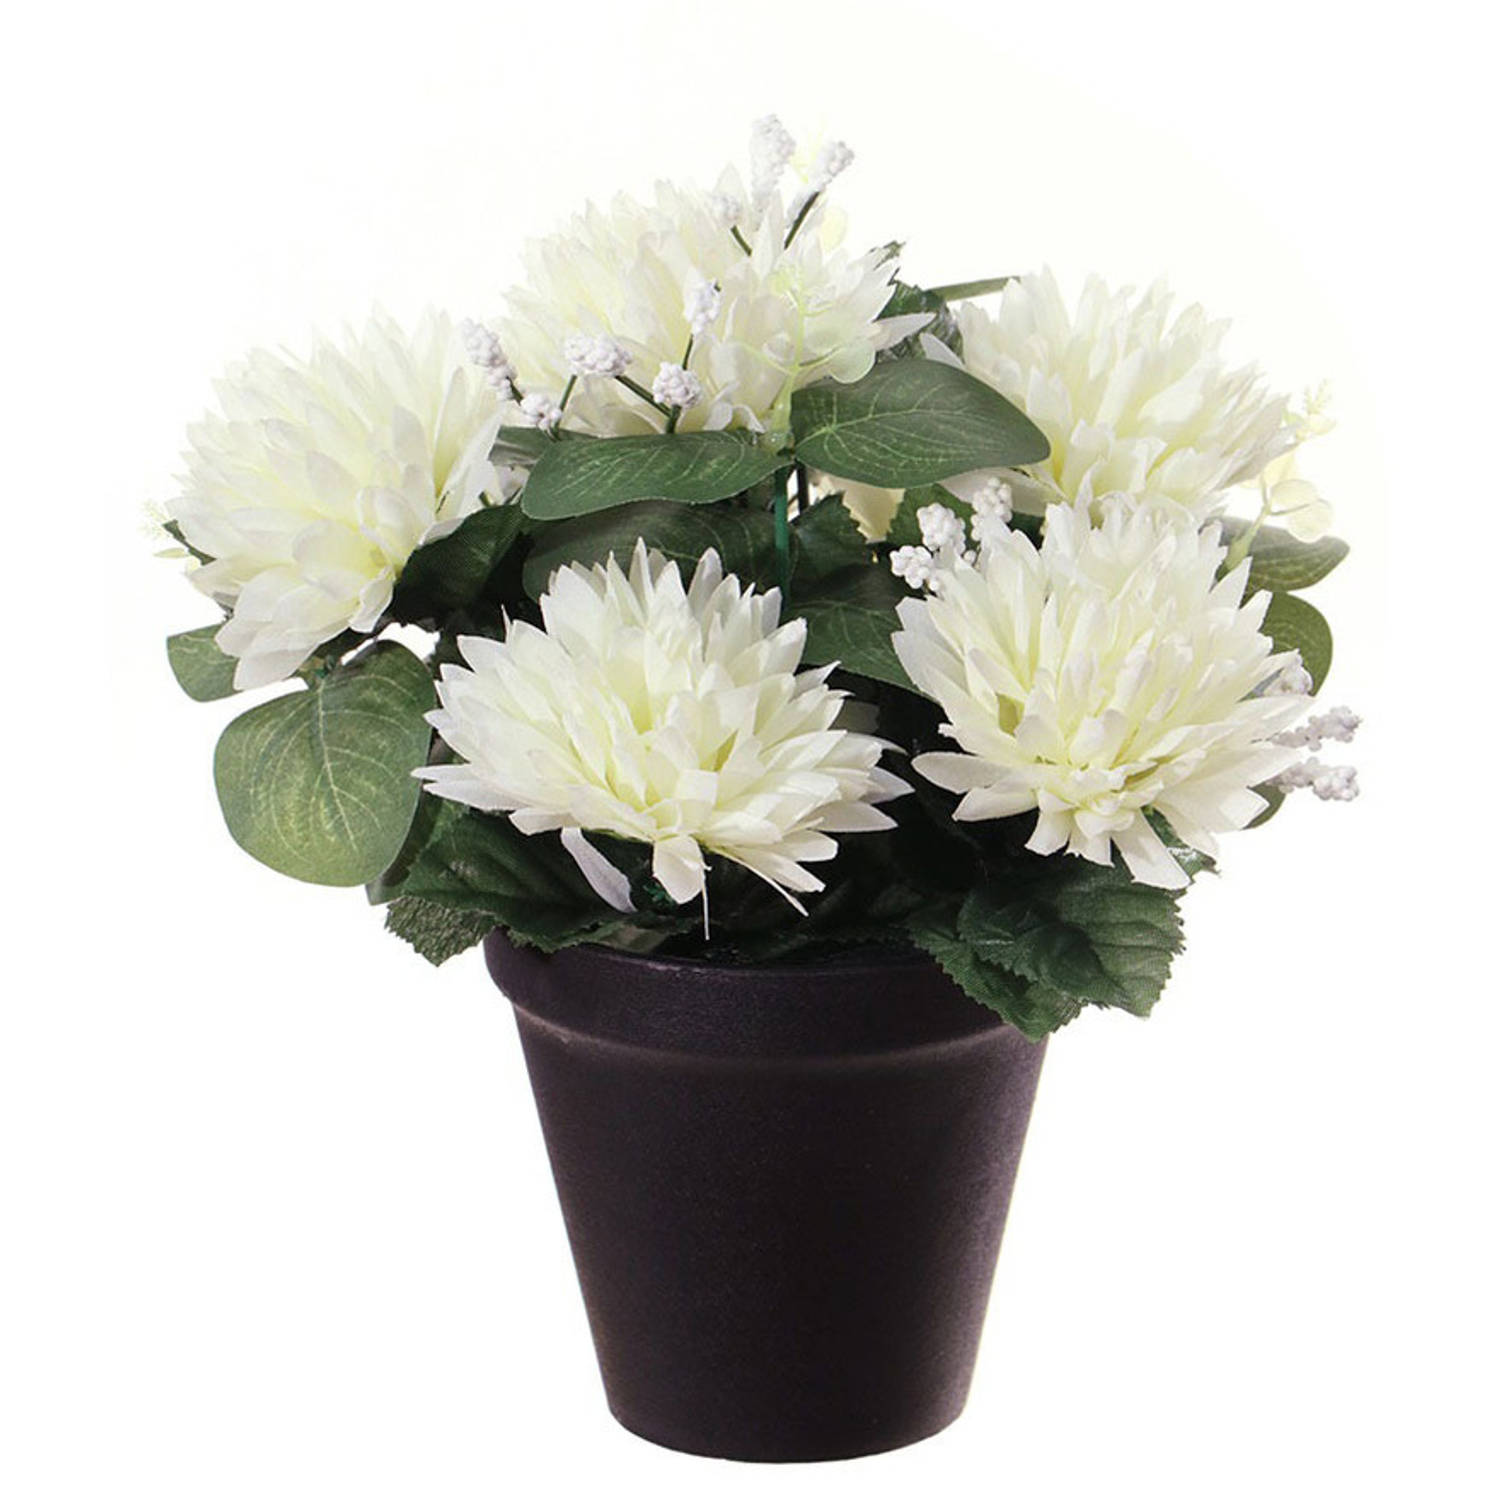 Louis Maes Kunstbloemen plant in pot - witte tinten - 23 cm - Bloemenstuk ornament